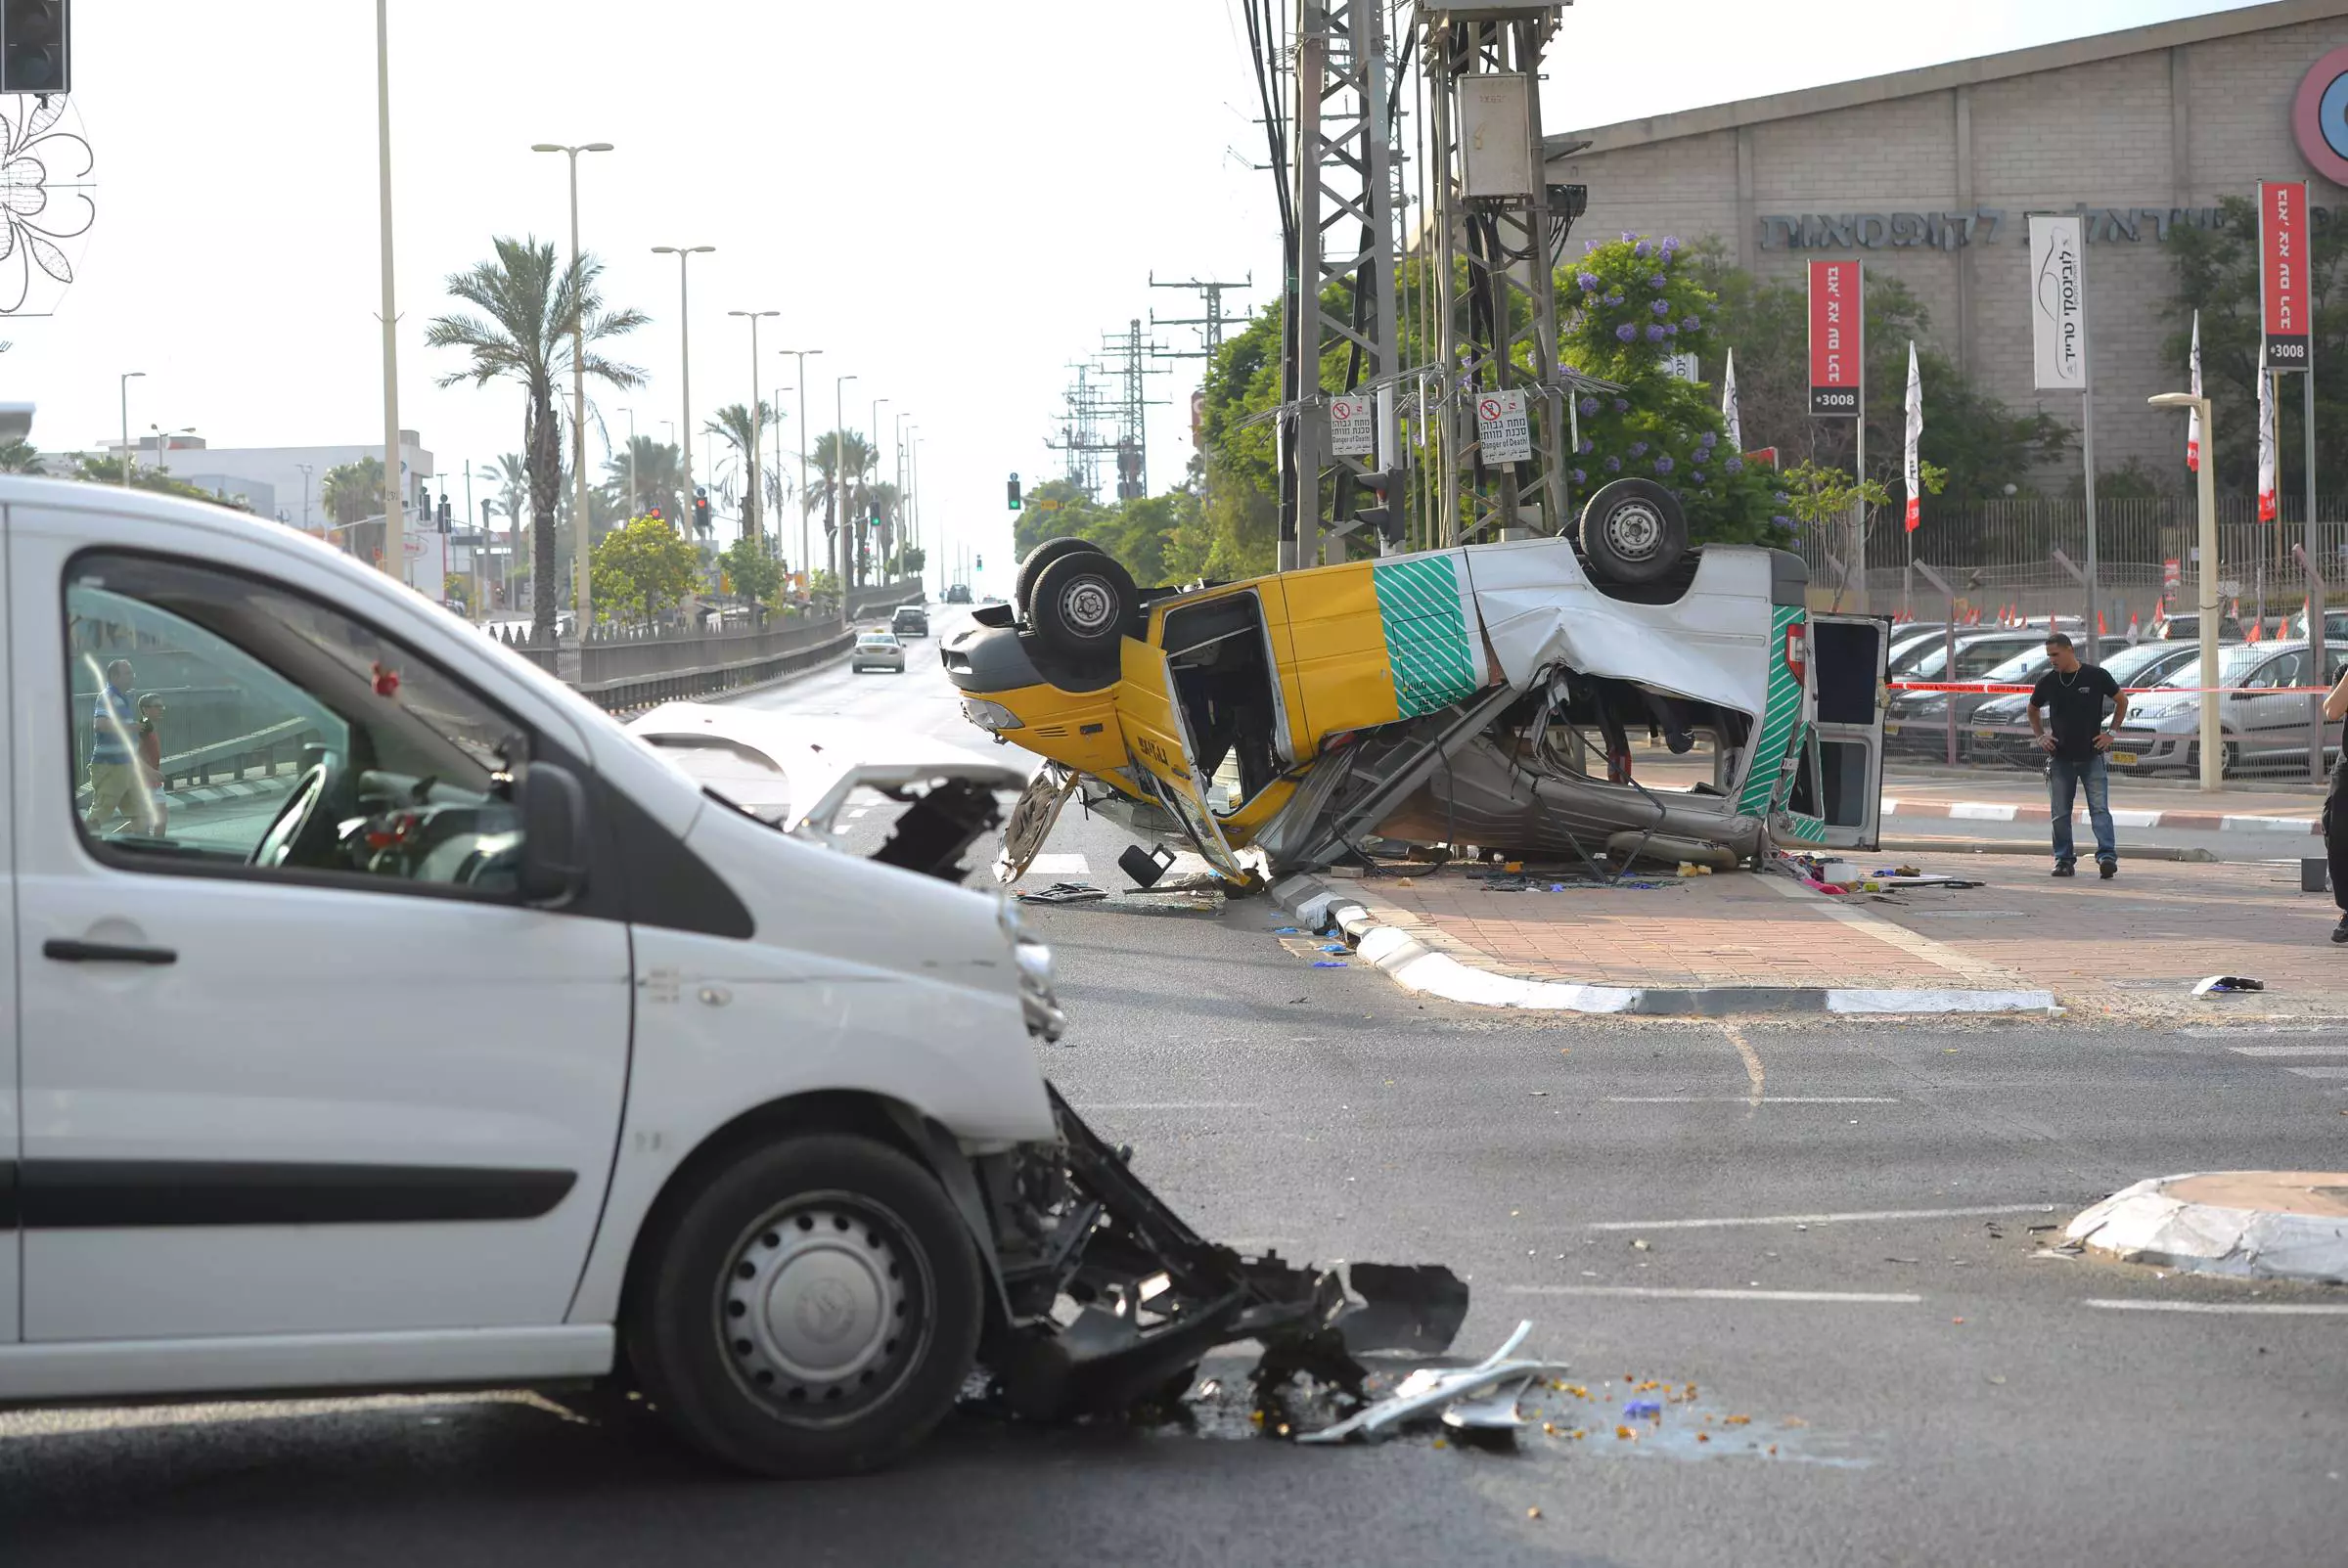 שמונה פצועים בהתהפכות מונית שירות בפתח תקווה, אוקטובר 2014